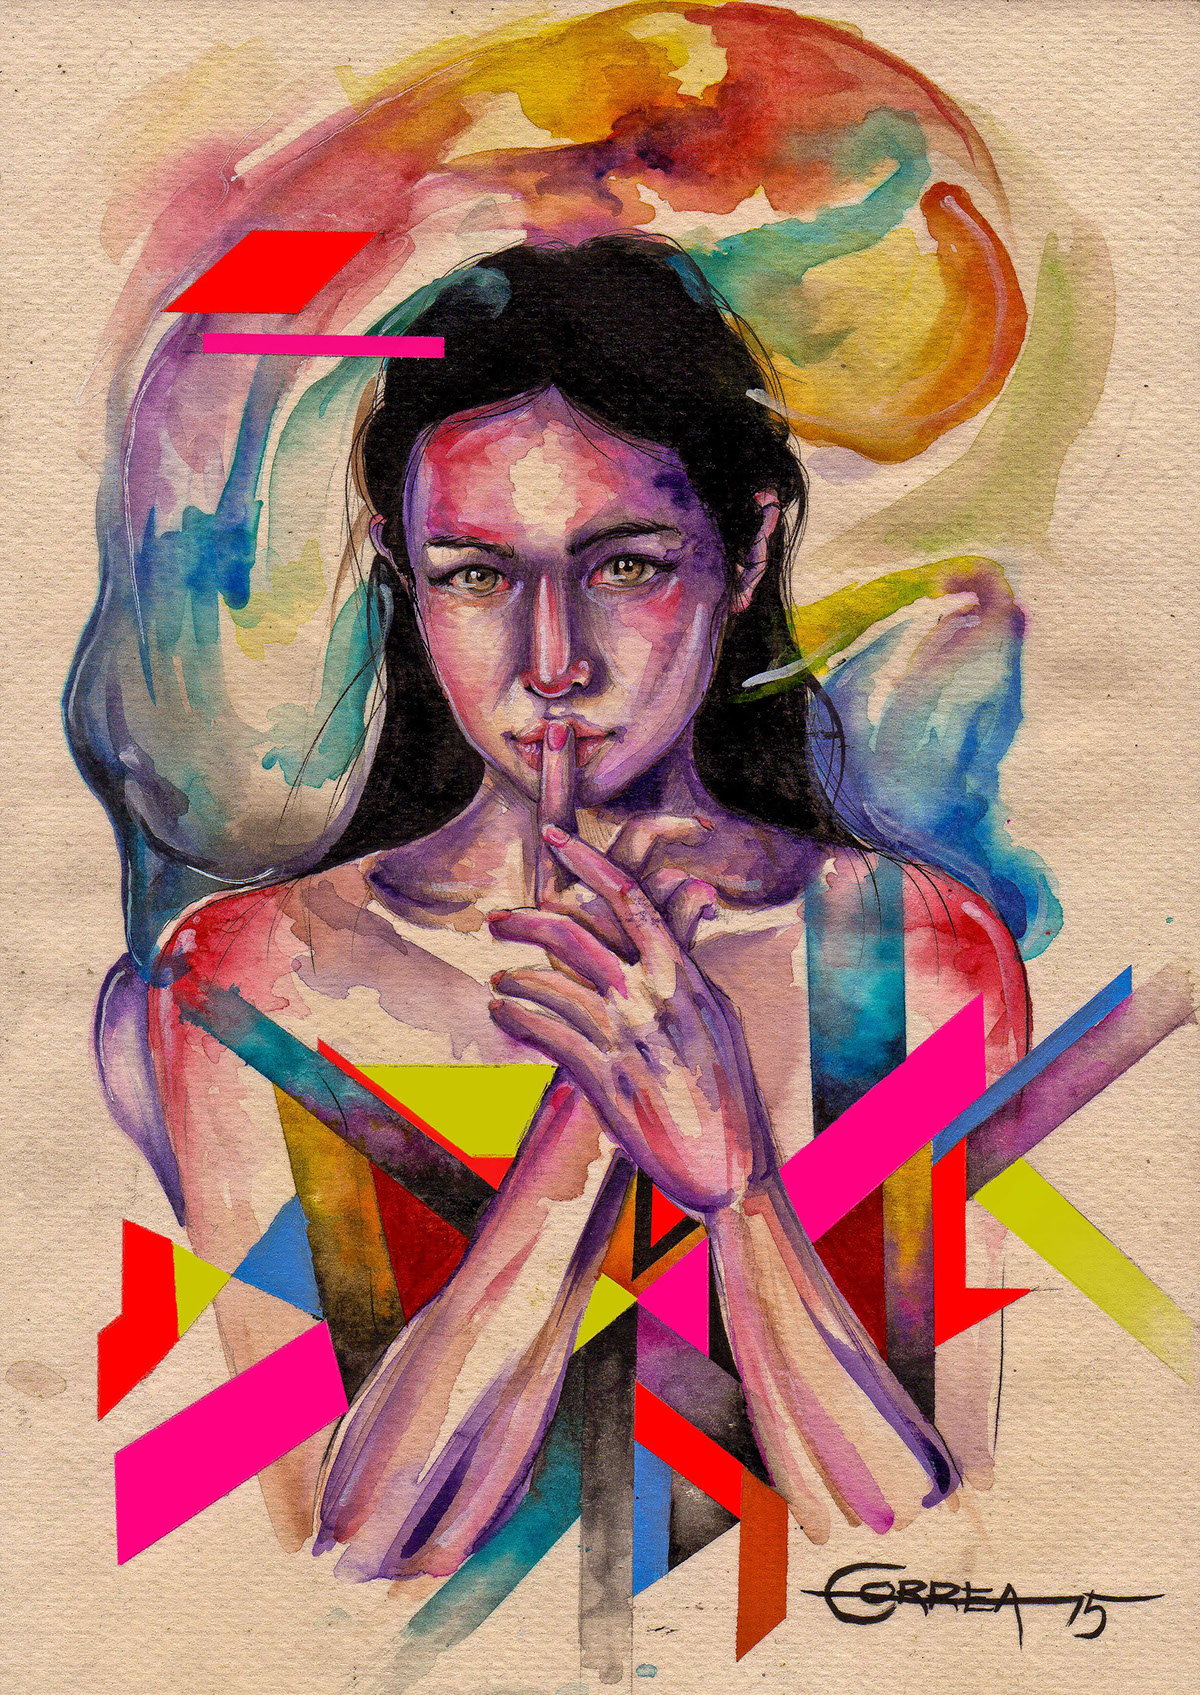 watercolor